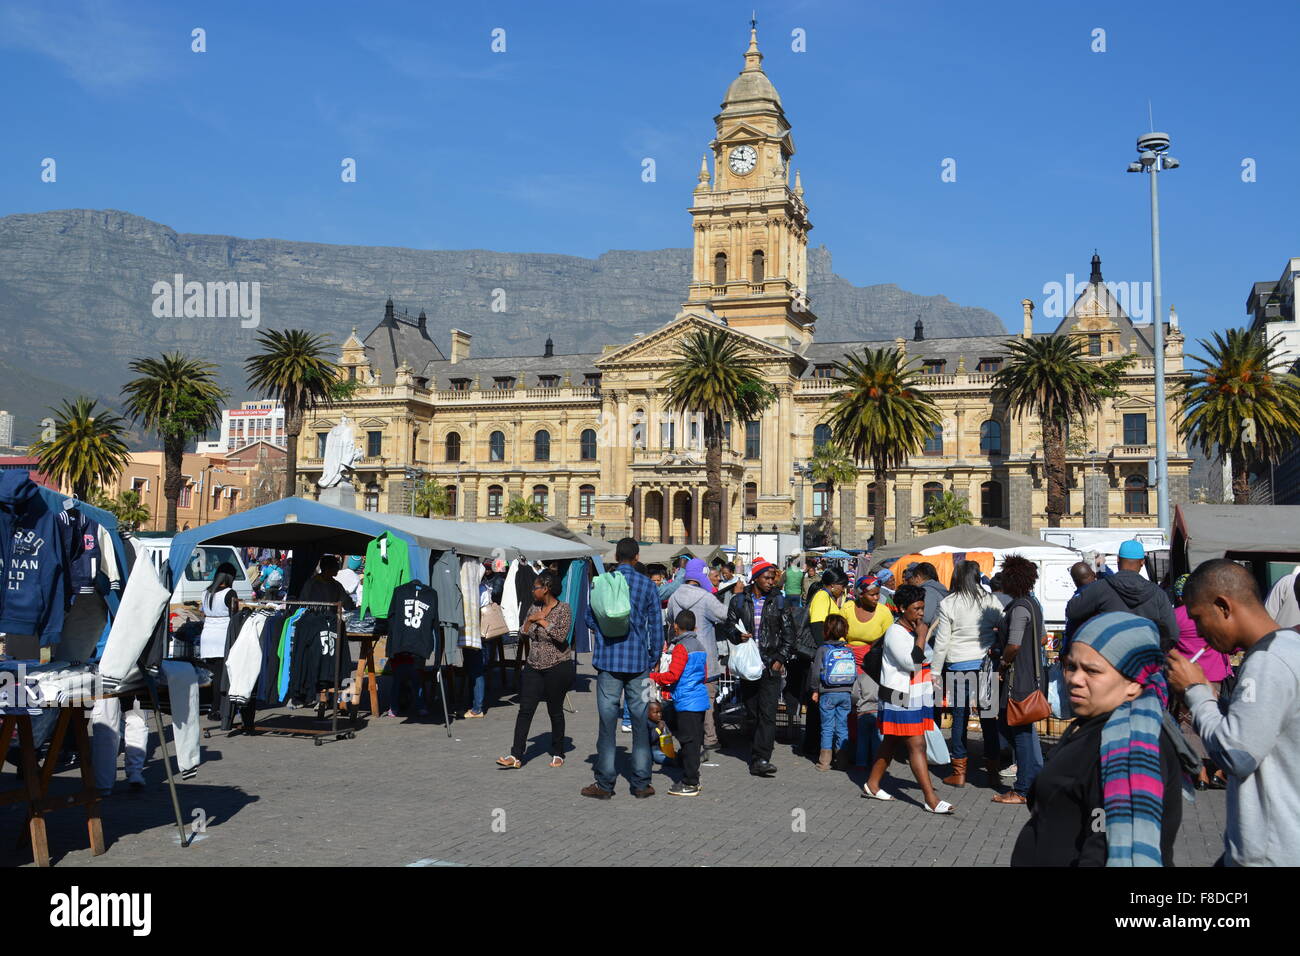 Toutes sortes de choses sont en vente pendant le jour du marché sur la grande parade en face de l'Hôtel de Ville du Cap, Afrique du Sud Banque D'Images